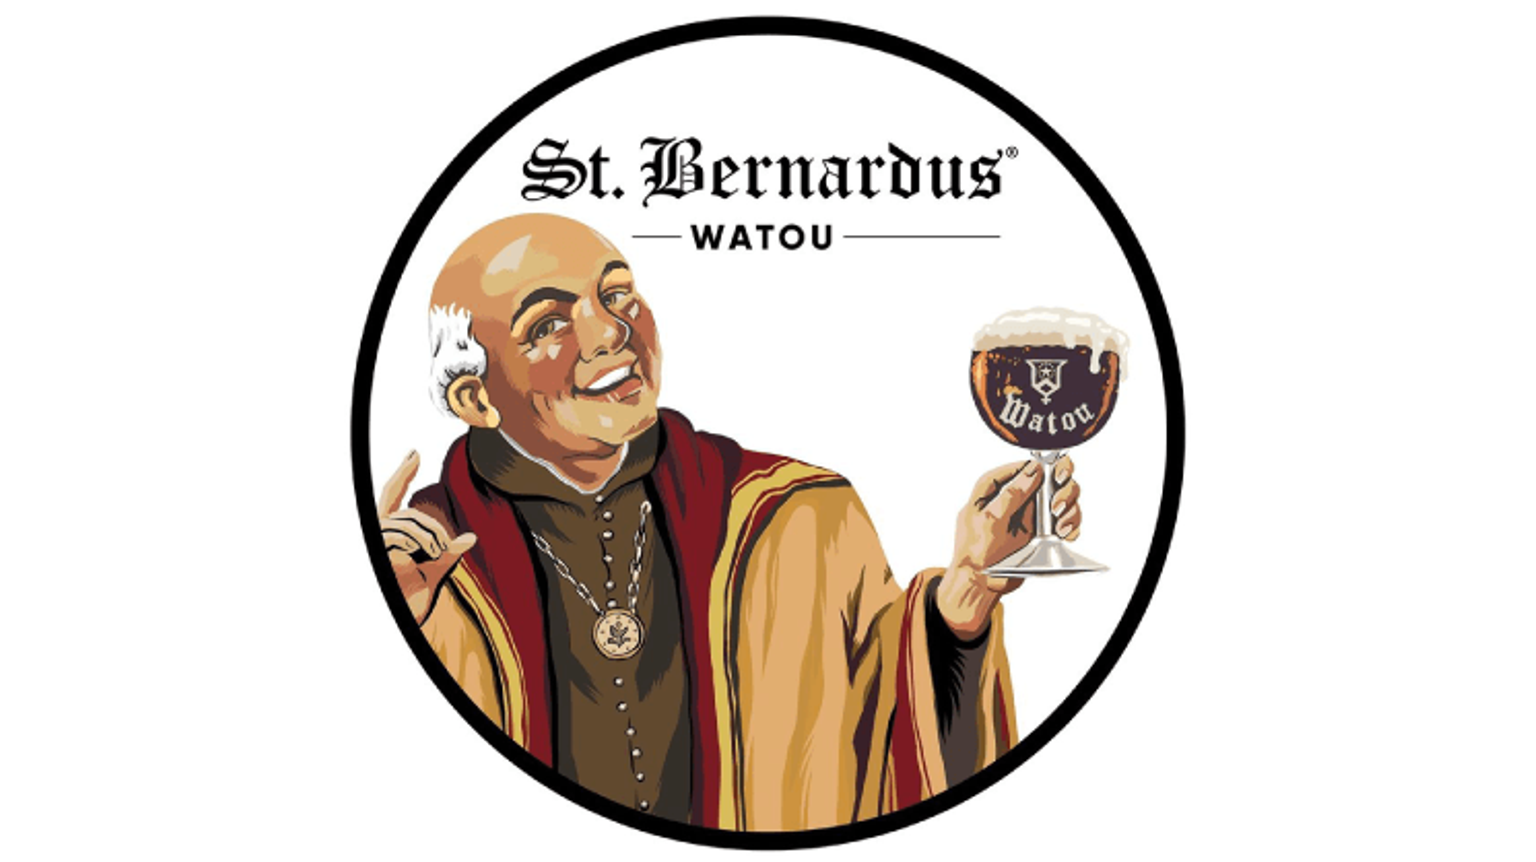 thumbnail for blog article named: St. Bernardus e Westvleteren sono le stesse birre Trappiste?